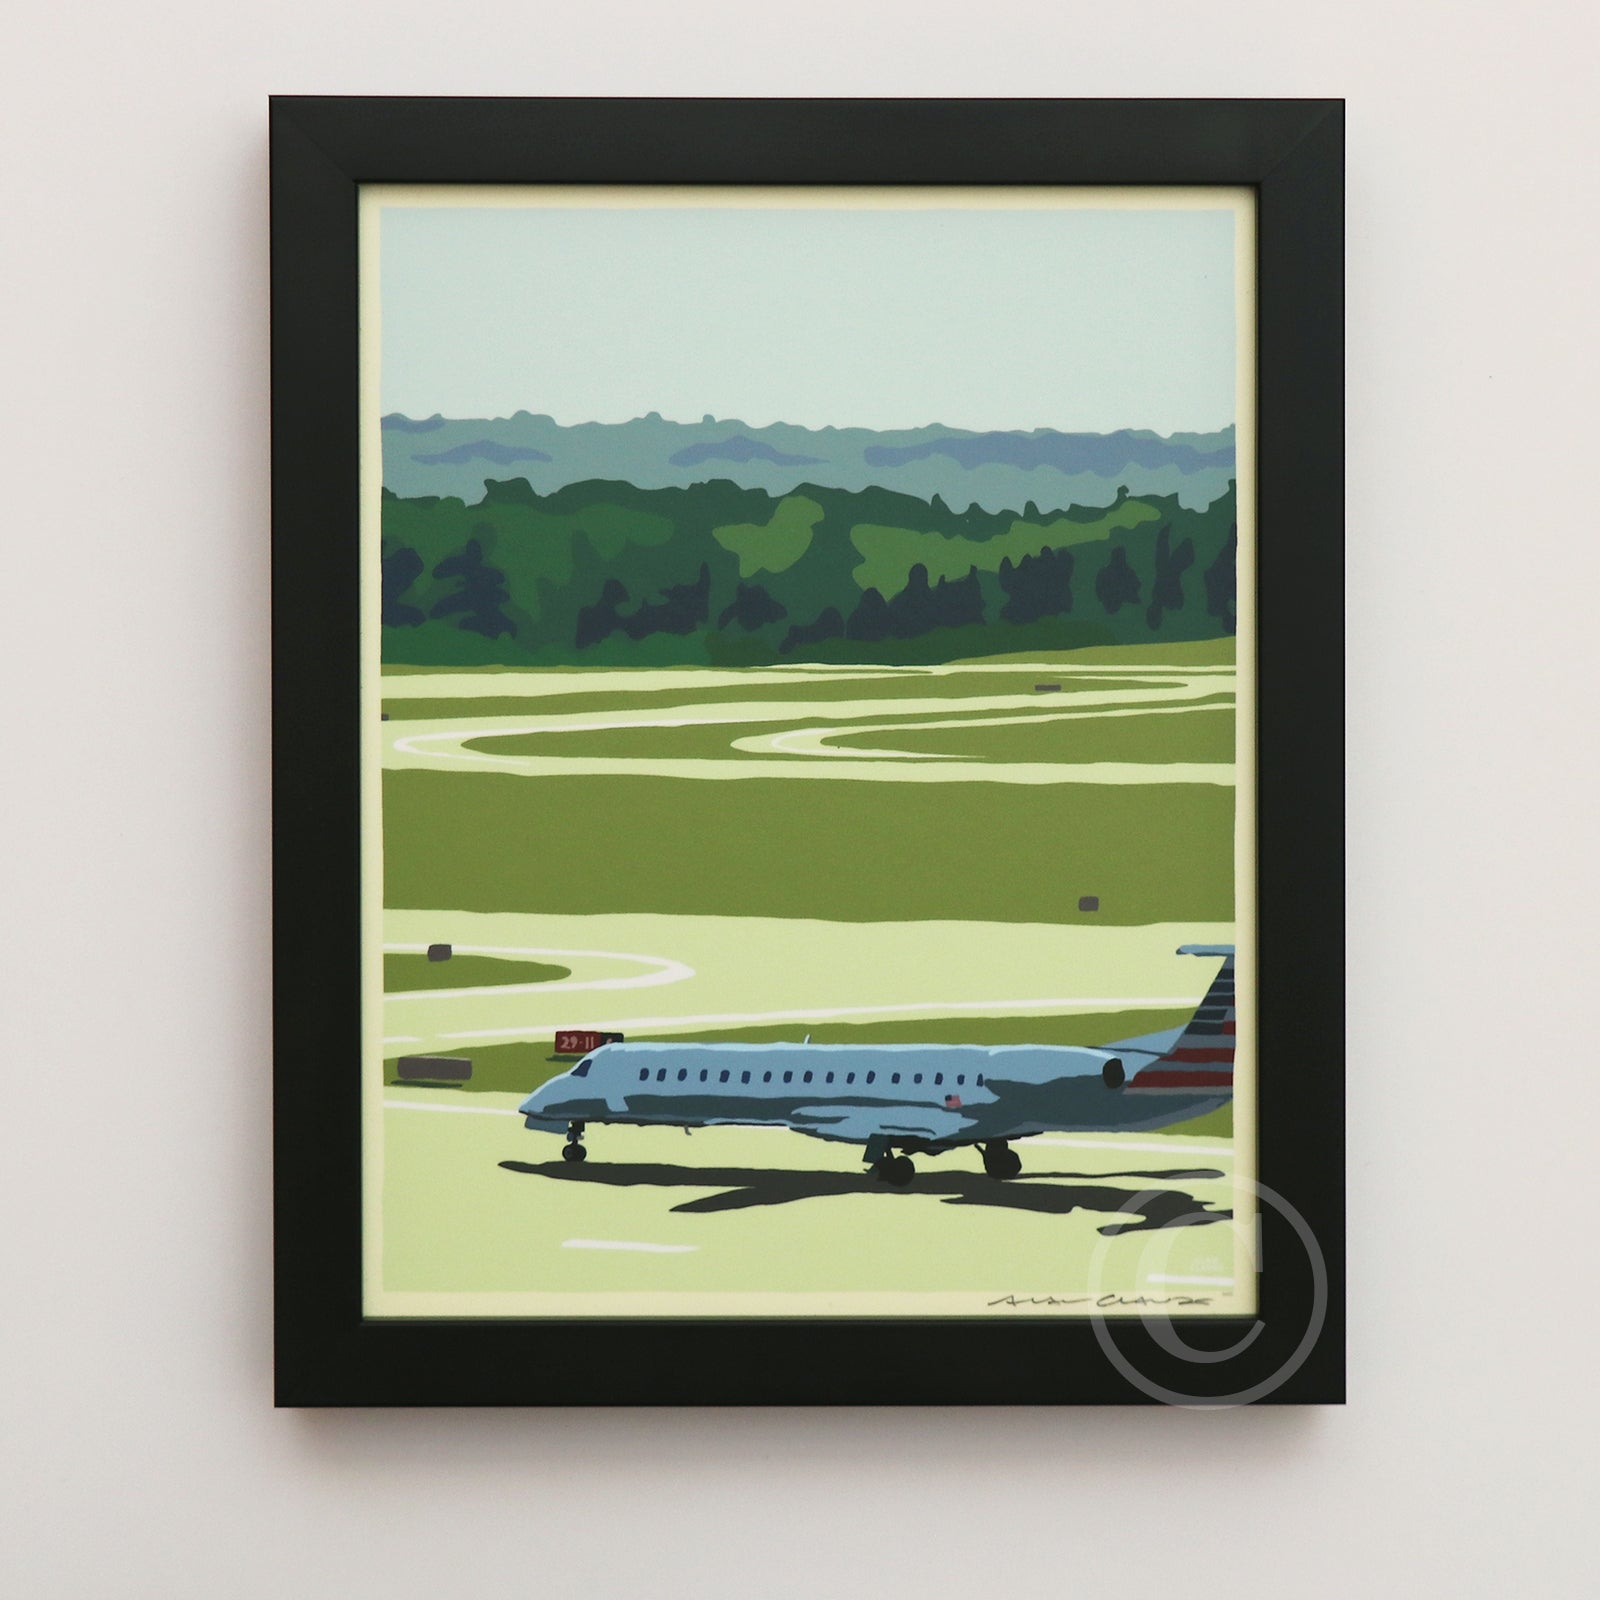 Jetport Art Print 8" x 10" Framed Wall Poster By Alan Claude - Maine